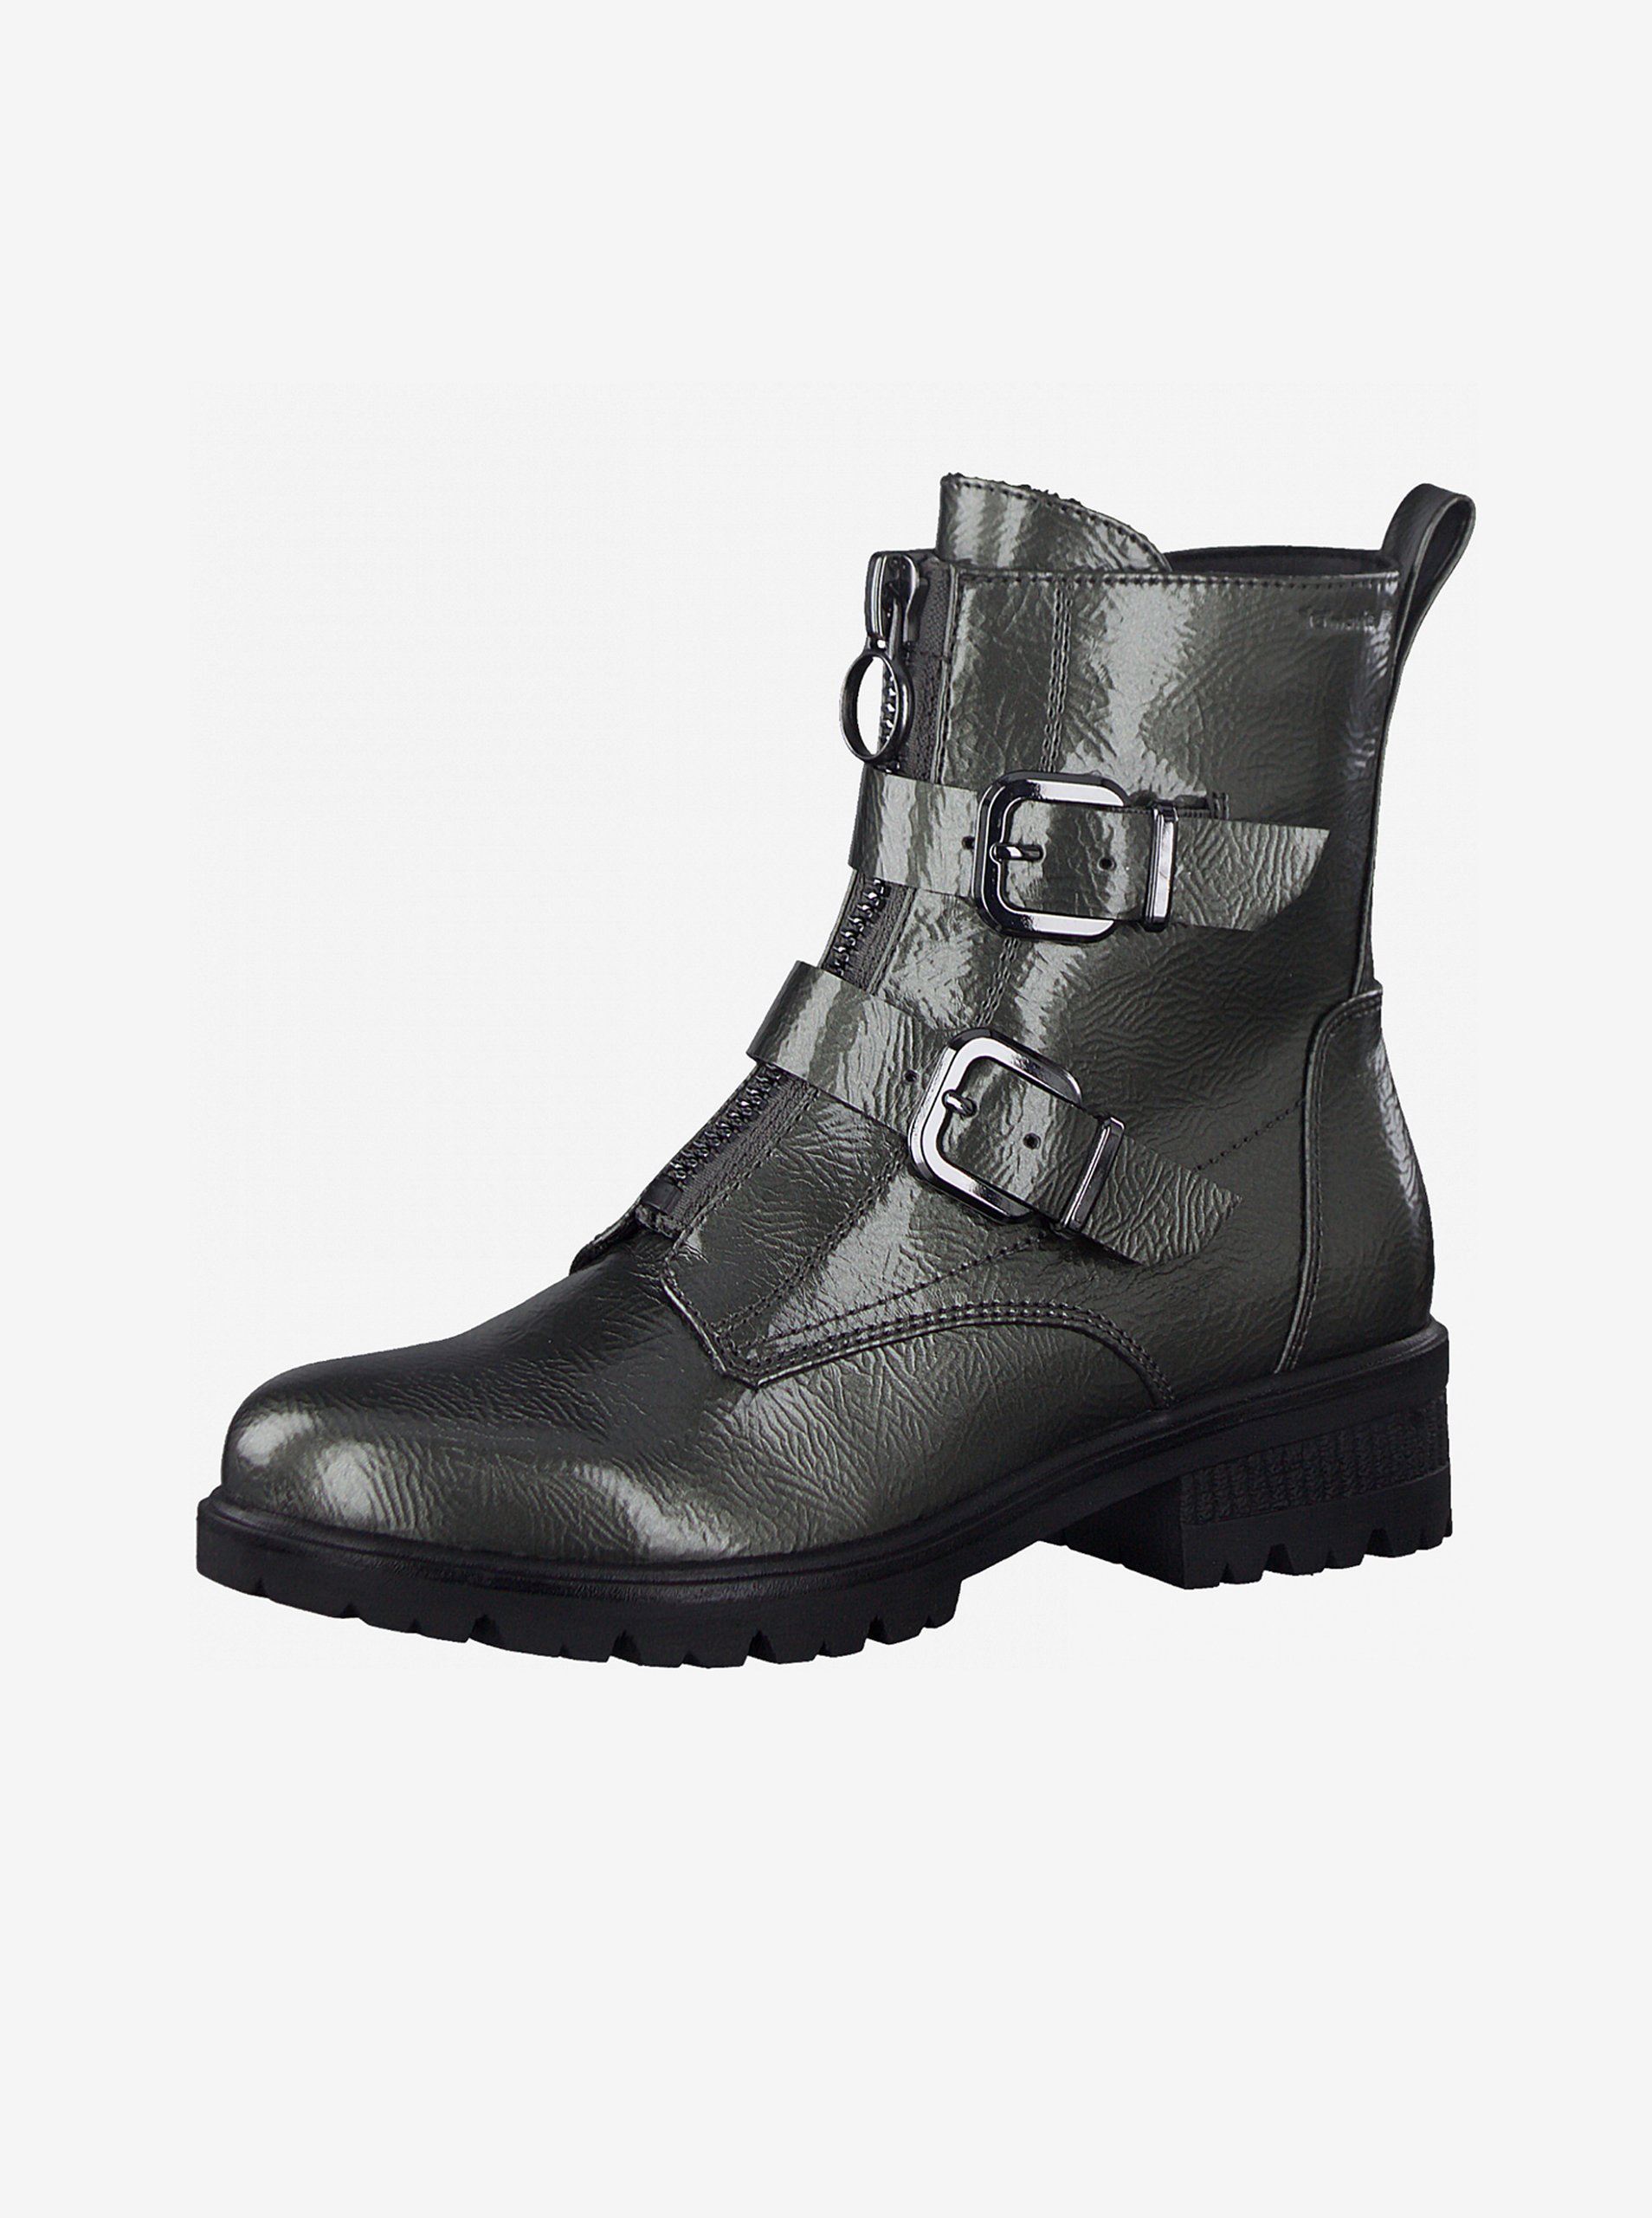 E-shop Tmavě šedé kotníkové boty s přezkami Tamaris